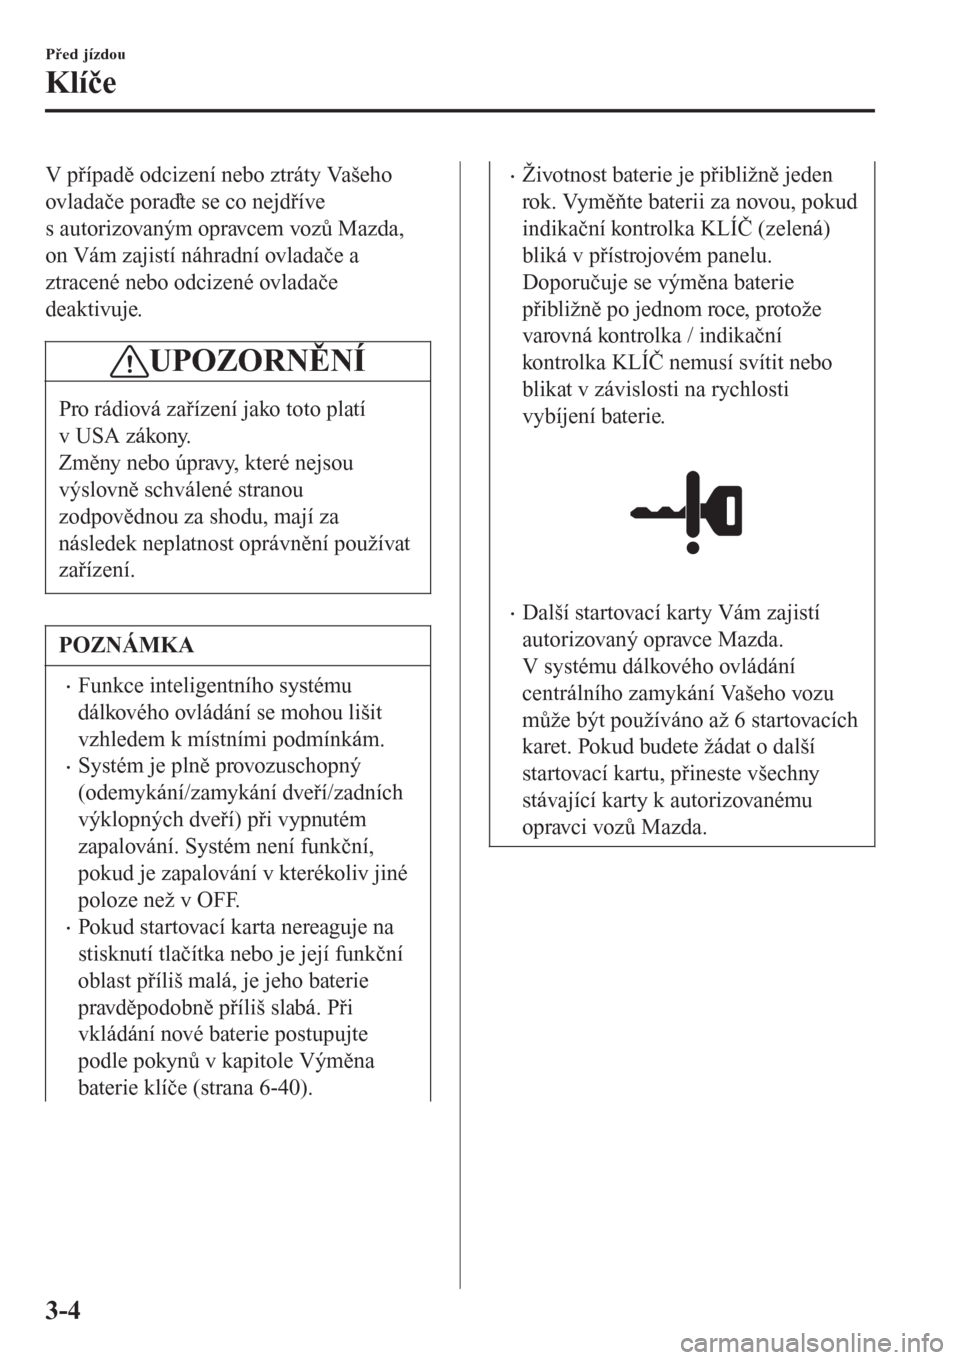 MAZDA MODEL CX-3 2016  Návod k obsluze (in Czech) V případě odcizení nebo ztráty Vašeho
ovladače poraďte se co nejdříve
s autorizovaným opravcem vozů Mazda,
on Vám zajistí náhradní ovladače a
ztracené nebo odcizené ovladače
deakti